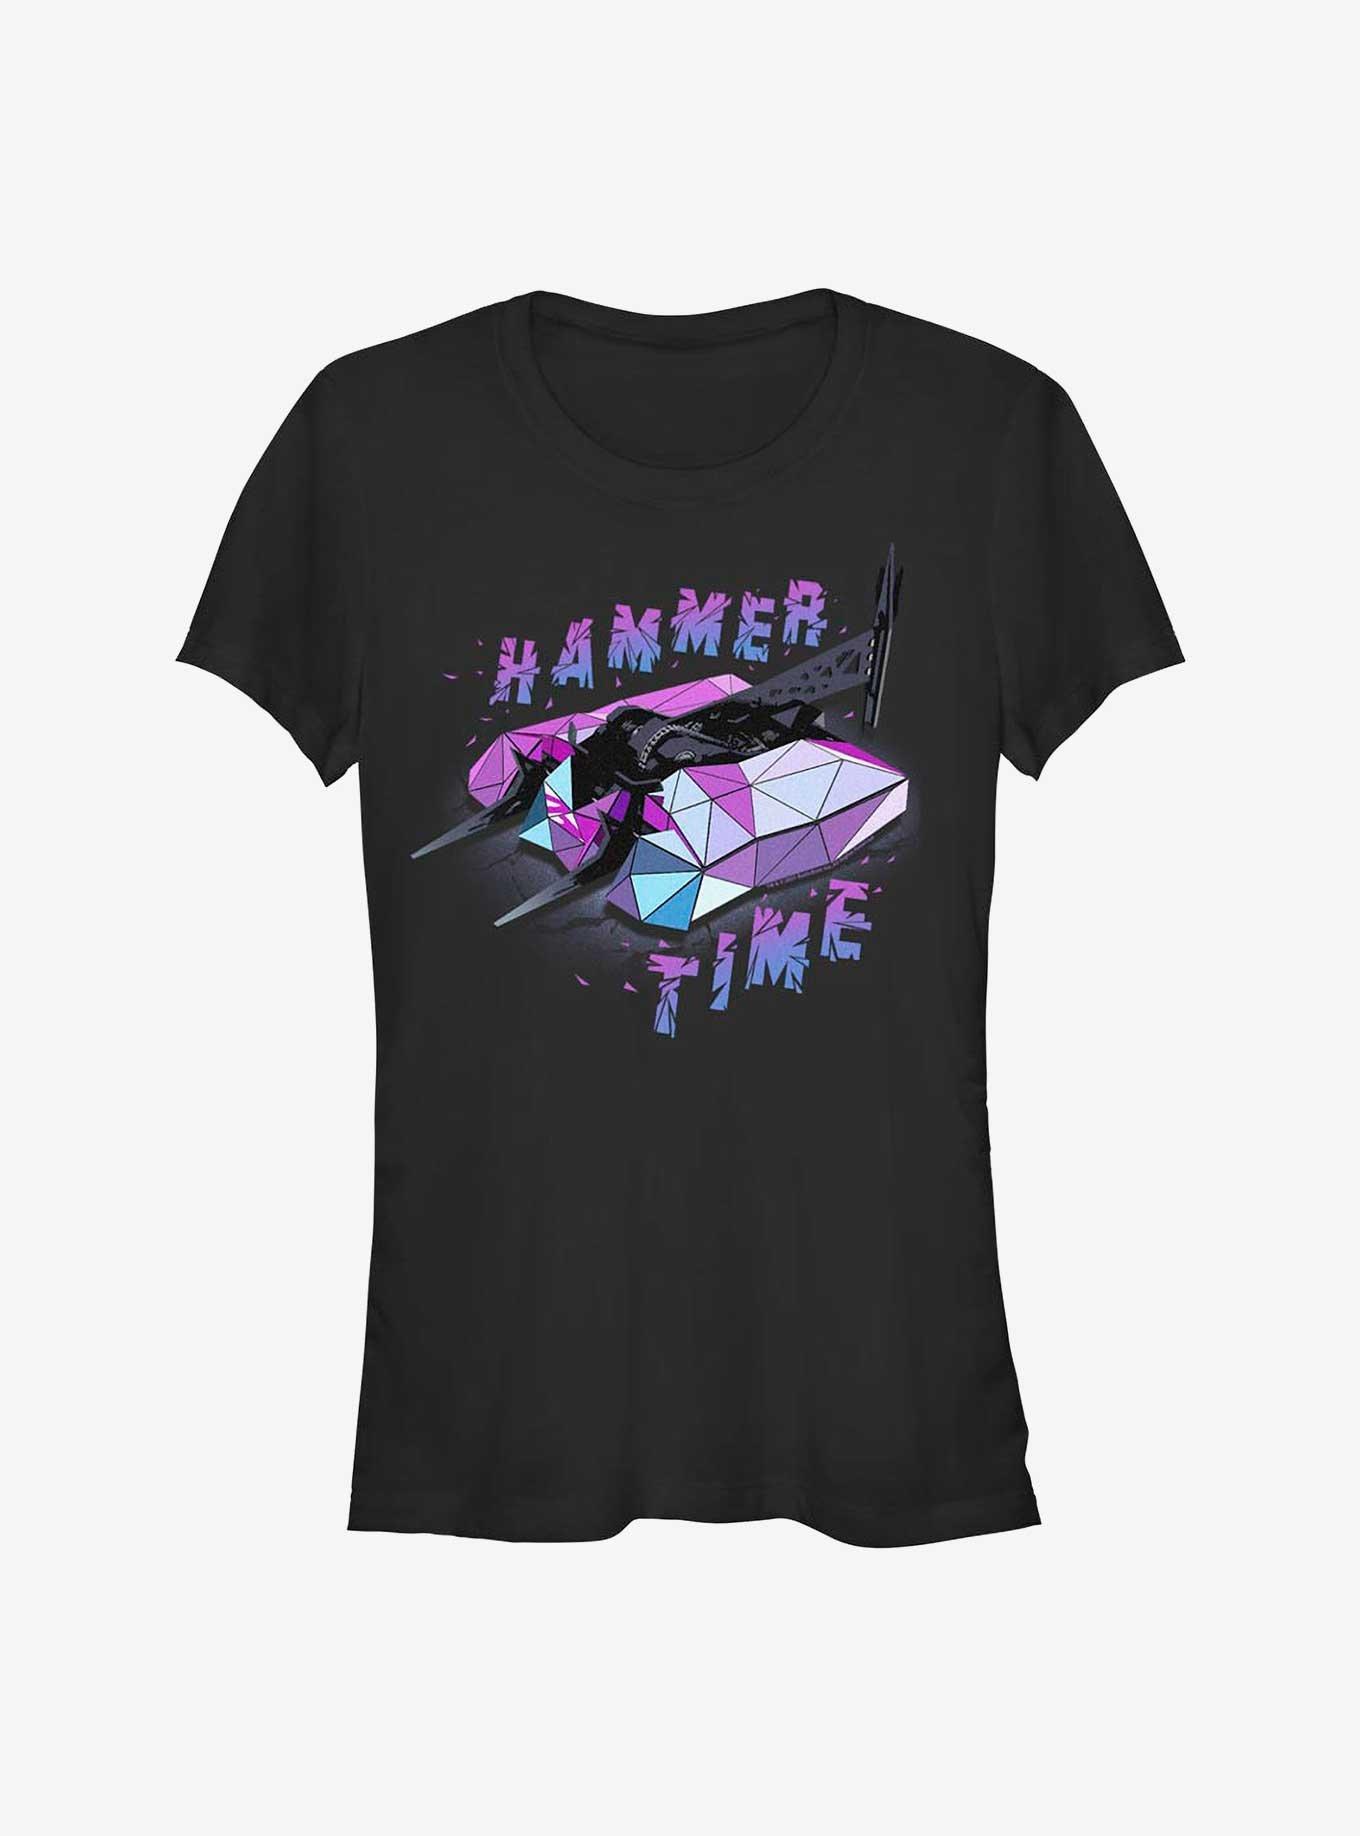 BattleBots Hammer Time Girls T-Shirt